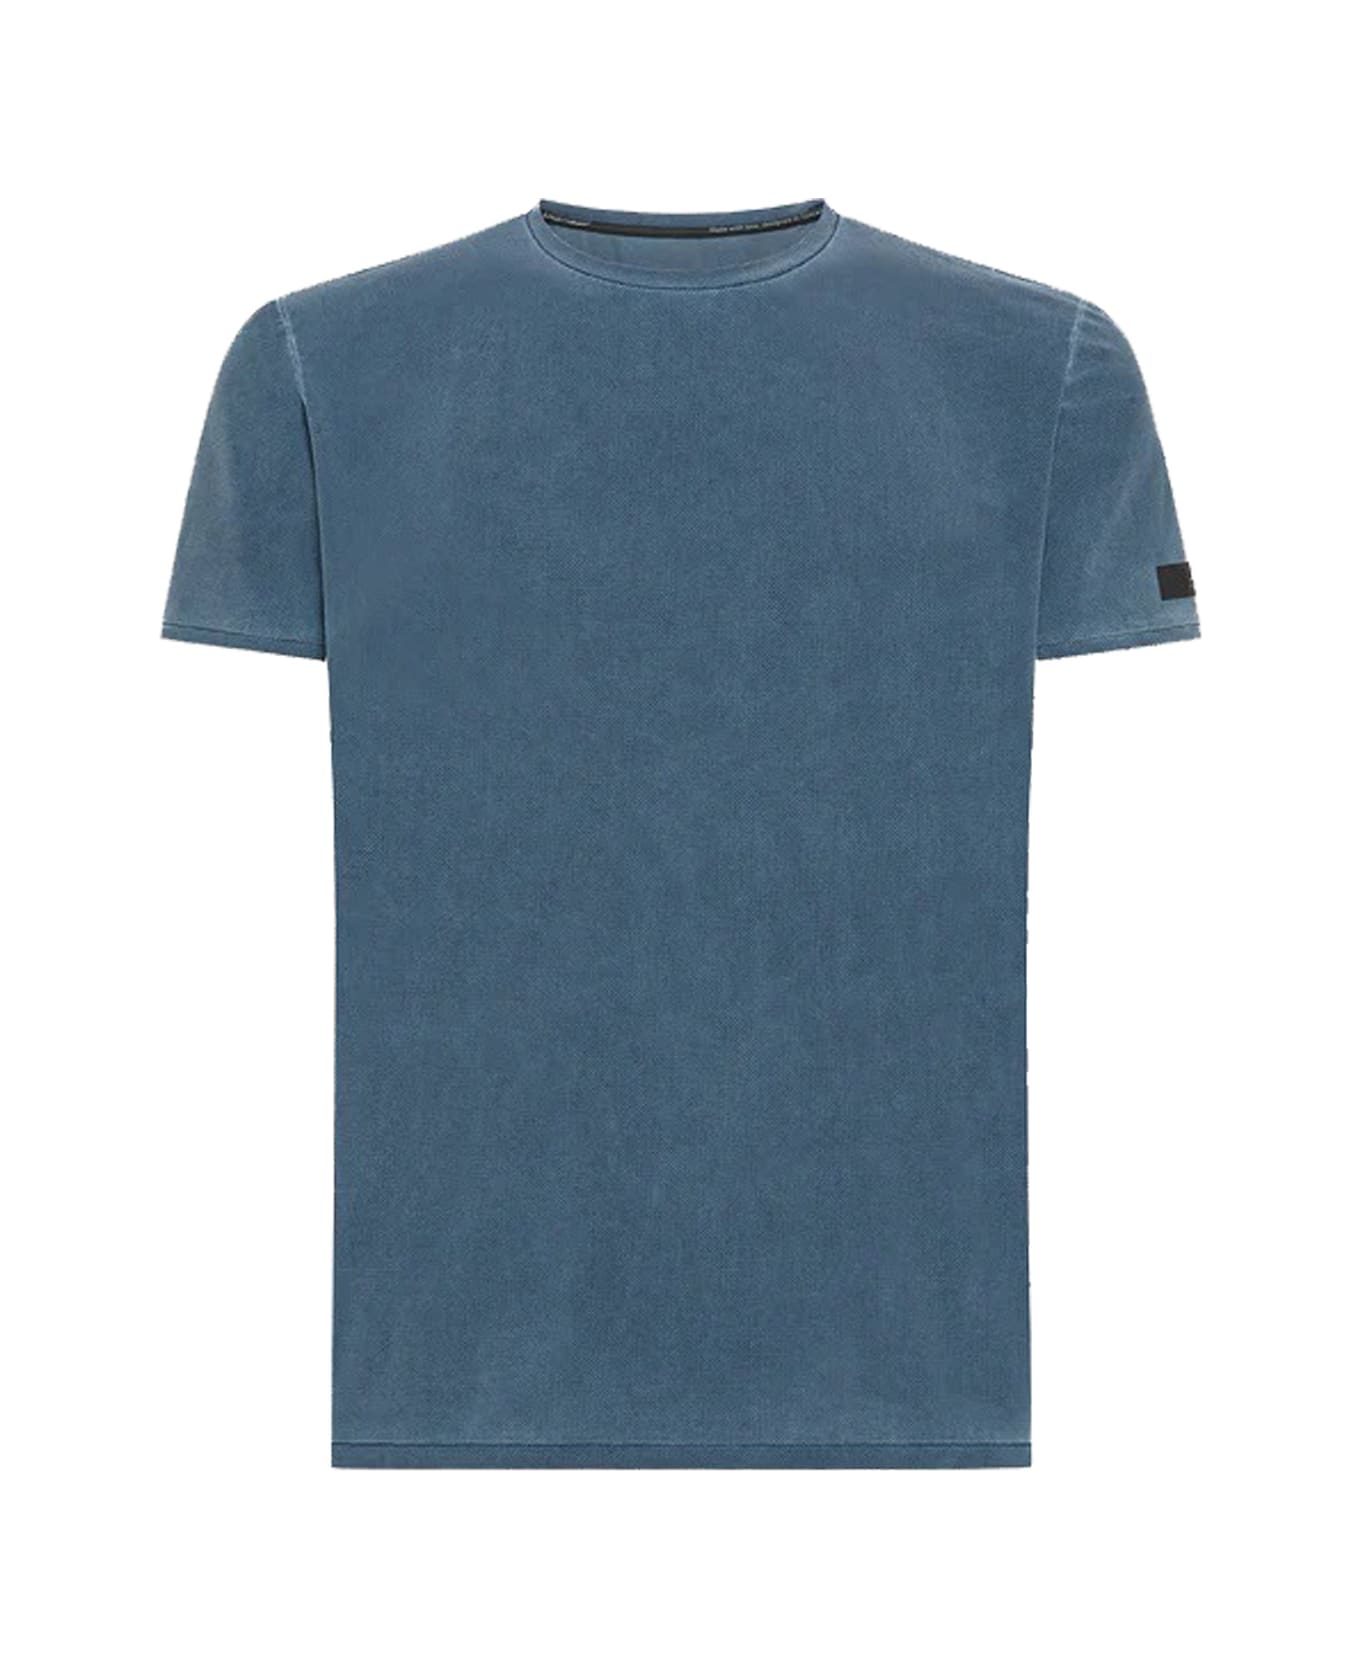 RRD - Roberto Ricci Design T-shirt - Blue シャツ